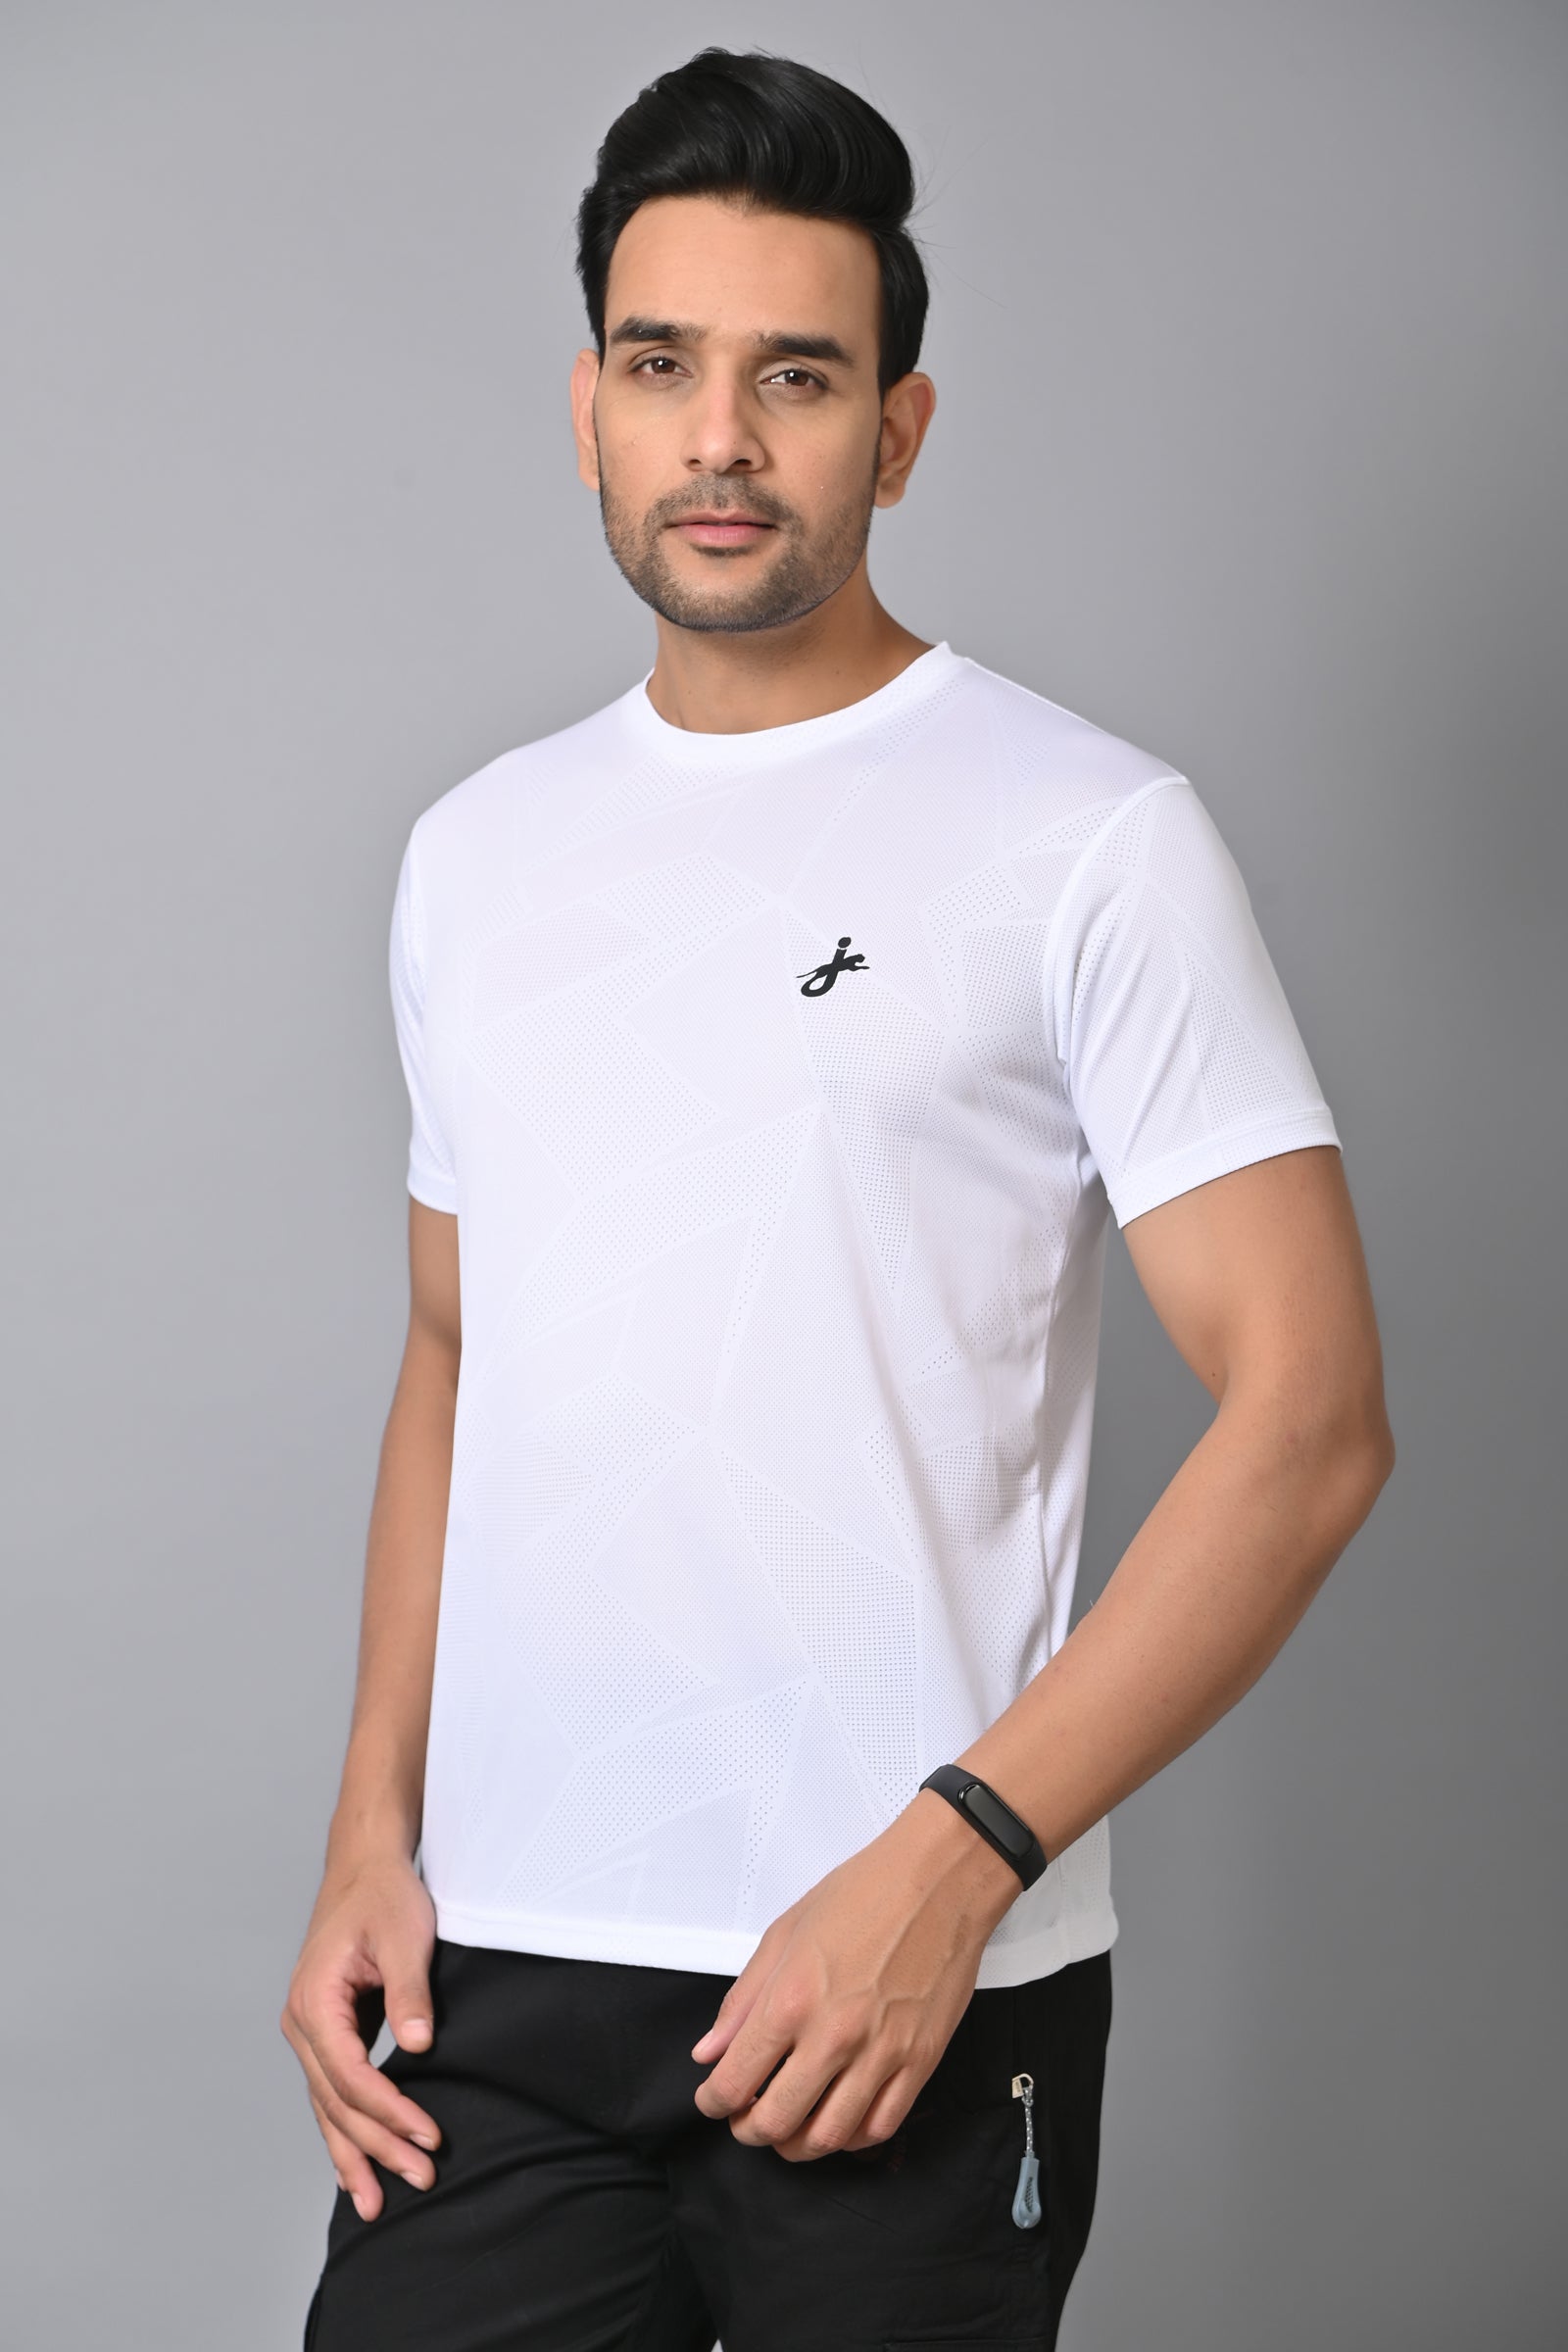 Jaguro Men's Sports T-Shirt White